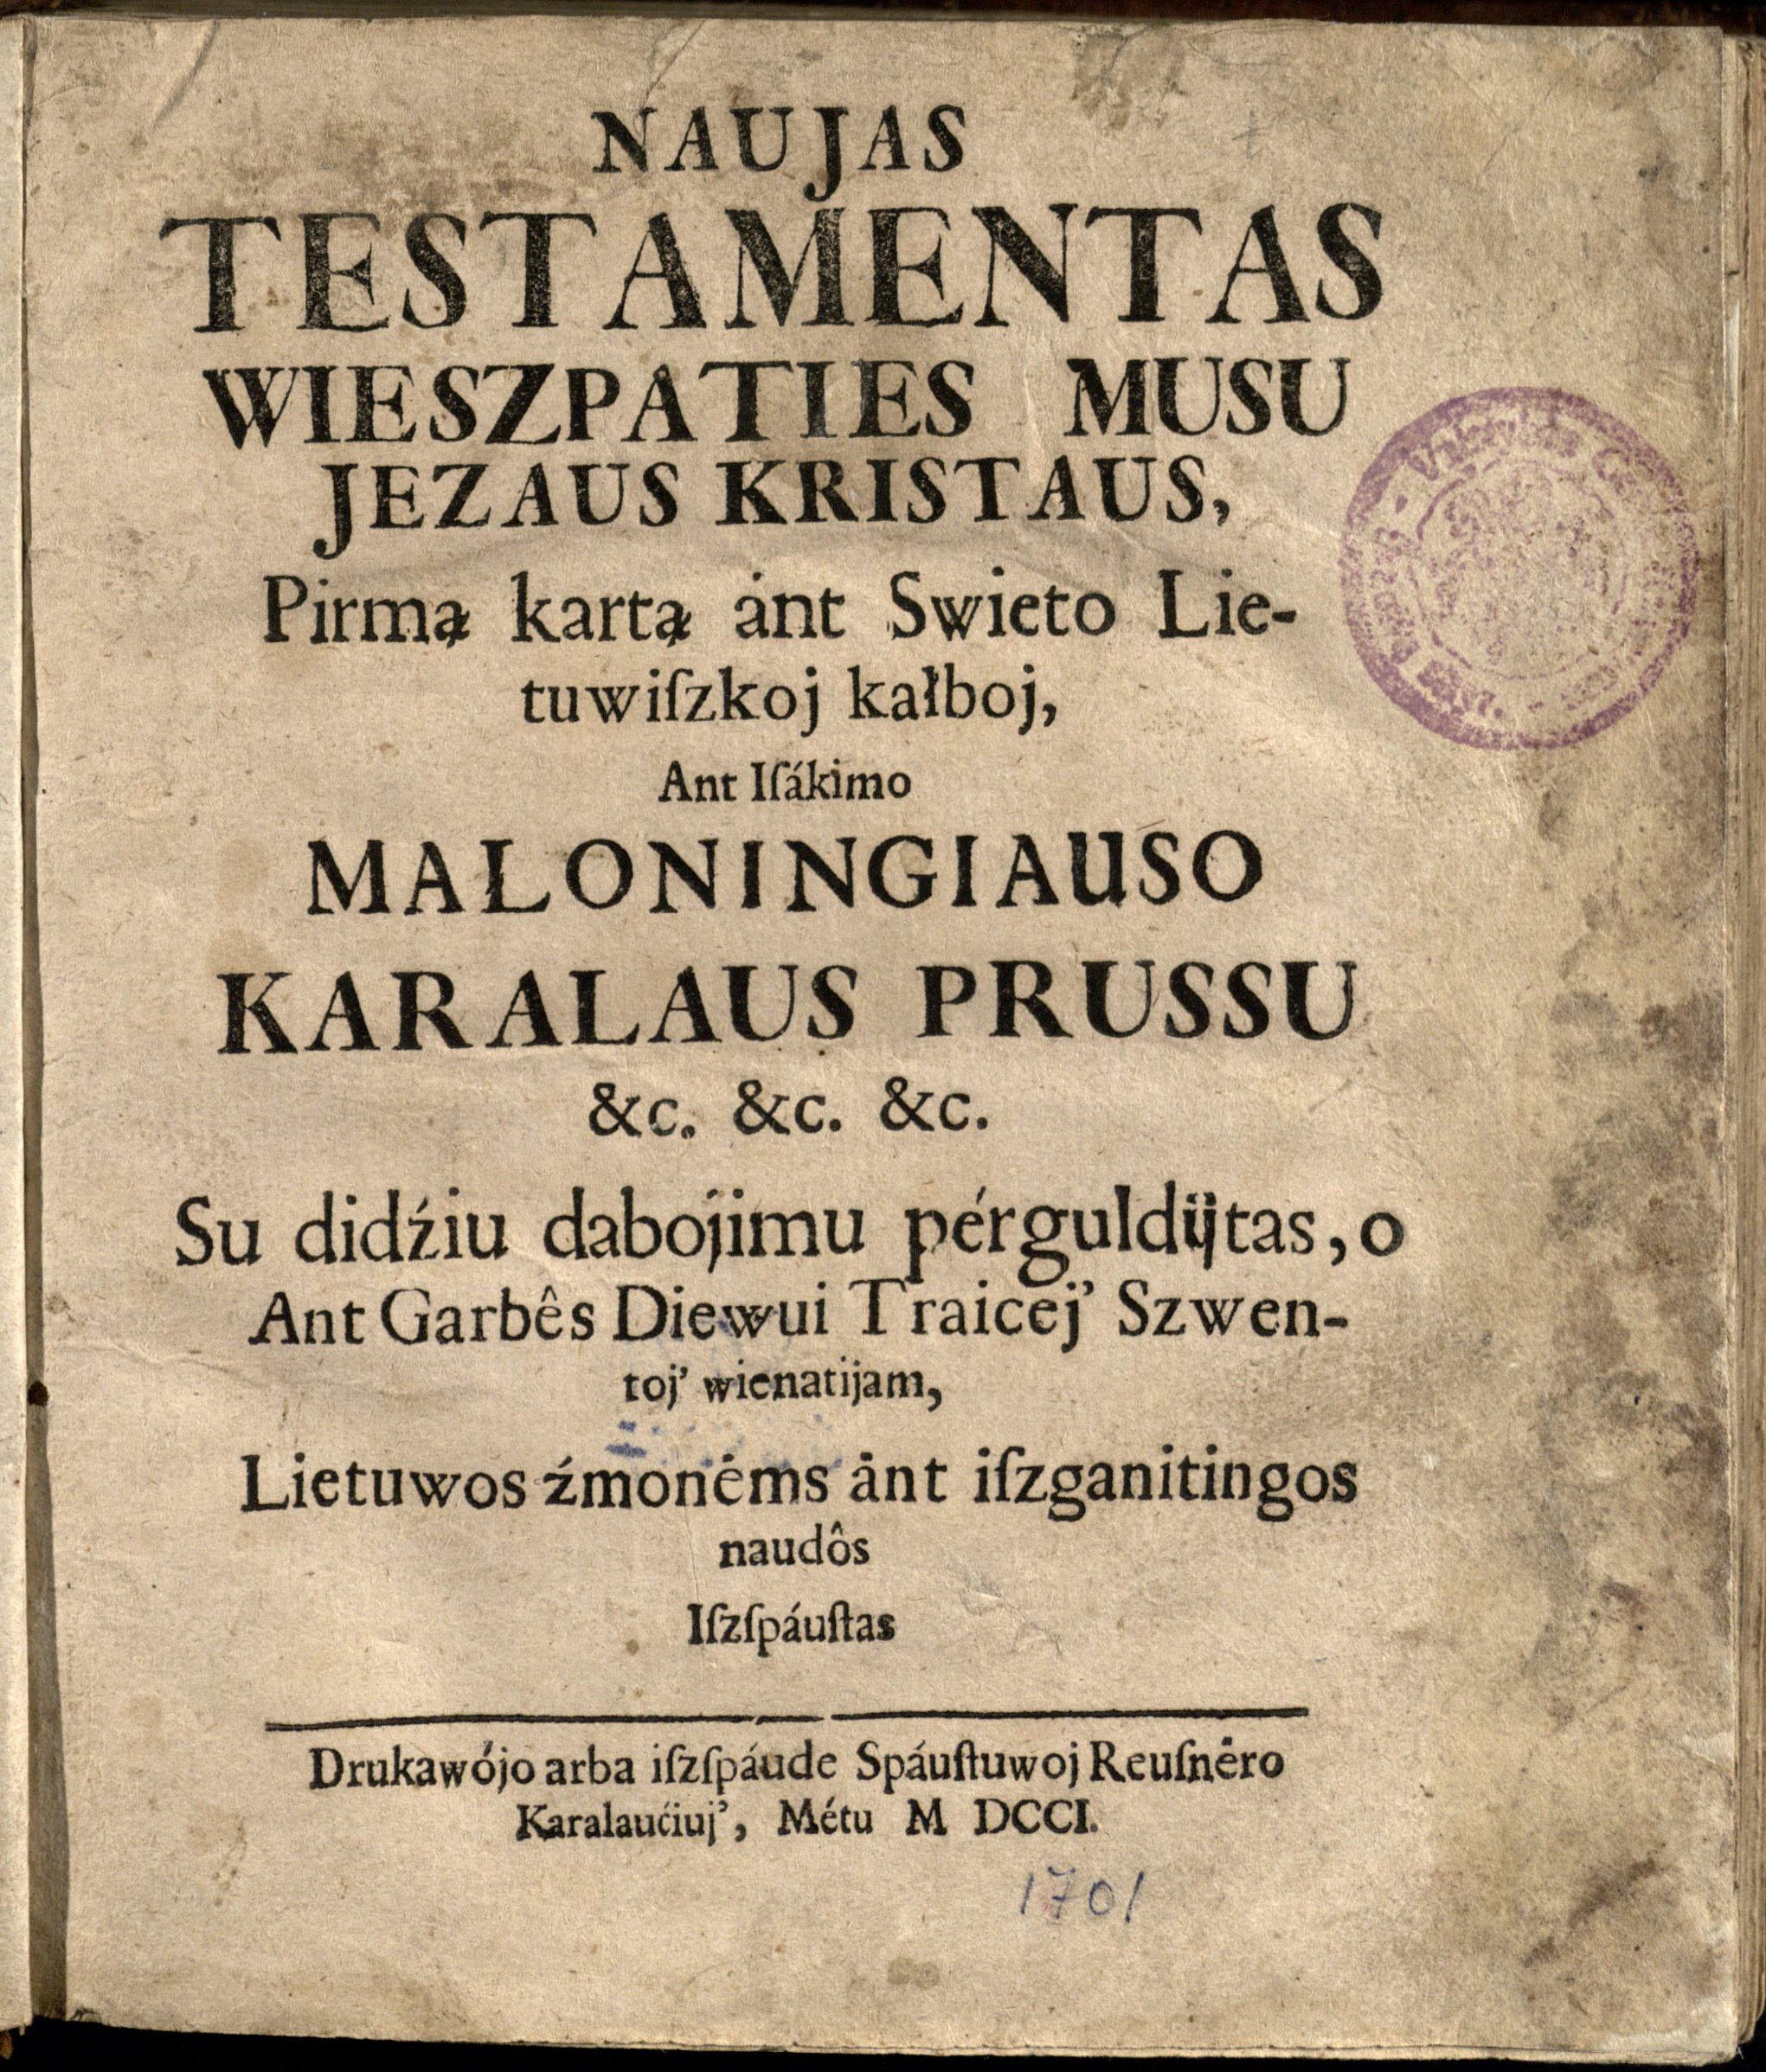 Naujas Testamentas (1701)